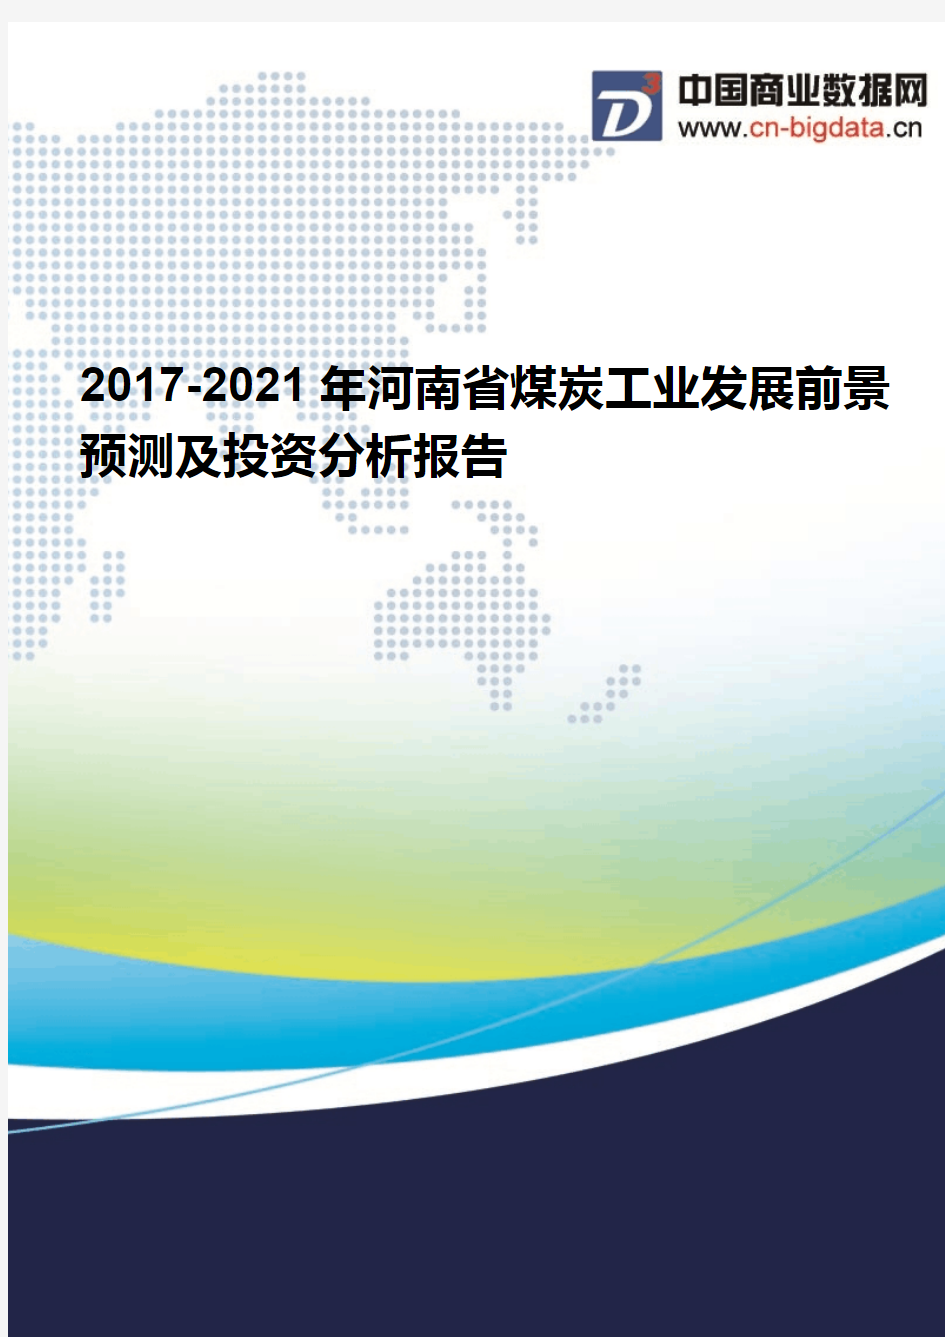 (2017版目录)2017-2021年河南省煤炭工业发展前景预测及投资分析报告